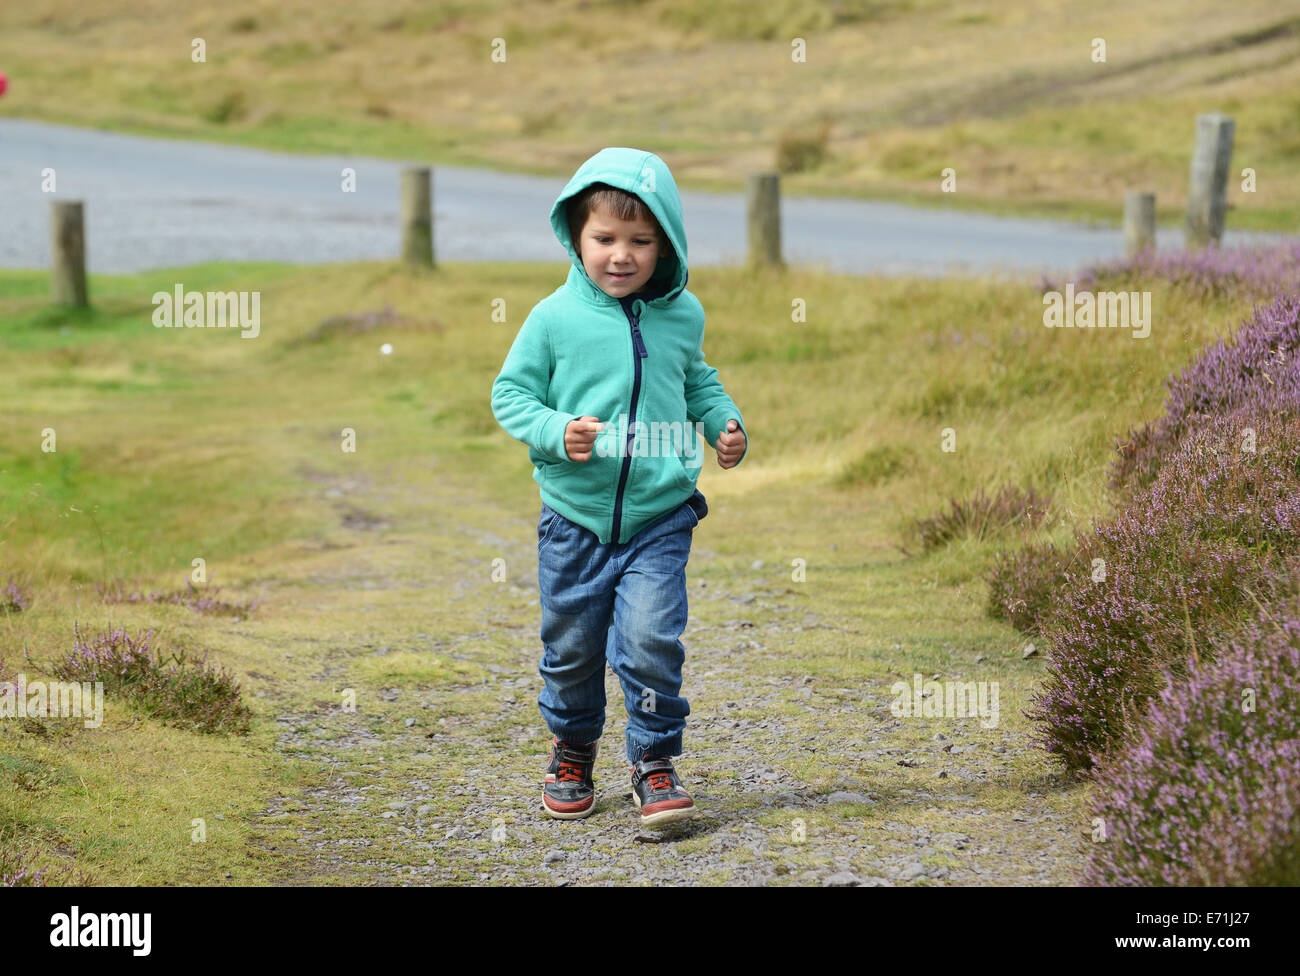 Jeune garçon enfant marcher seul dans la campagne rurale uk Banque D'Images